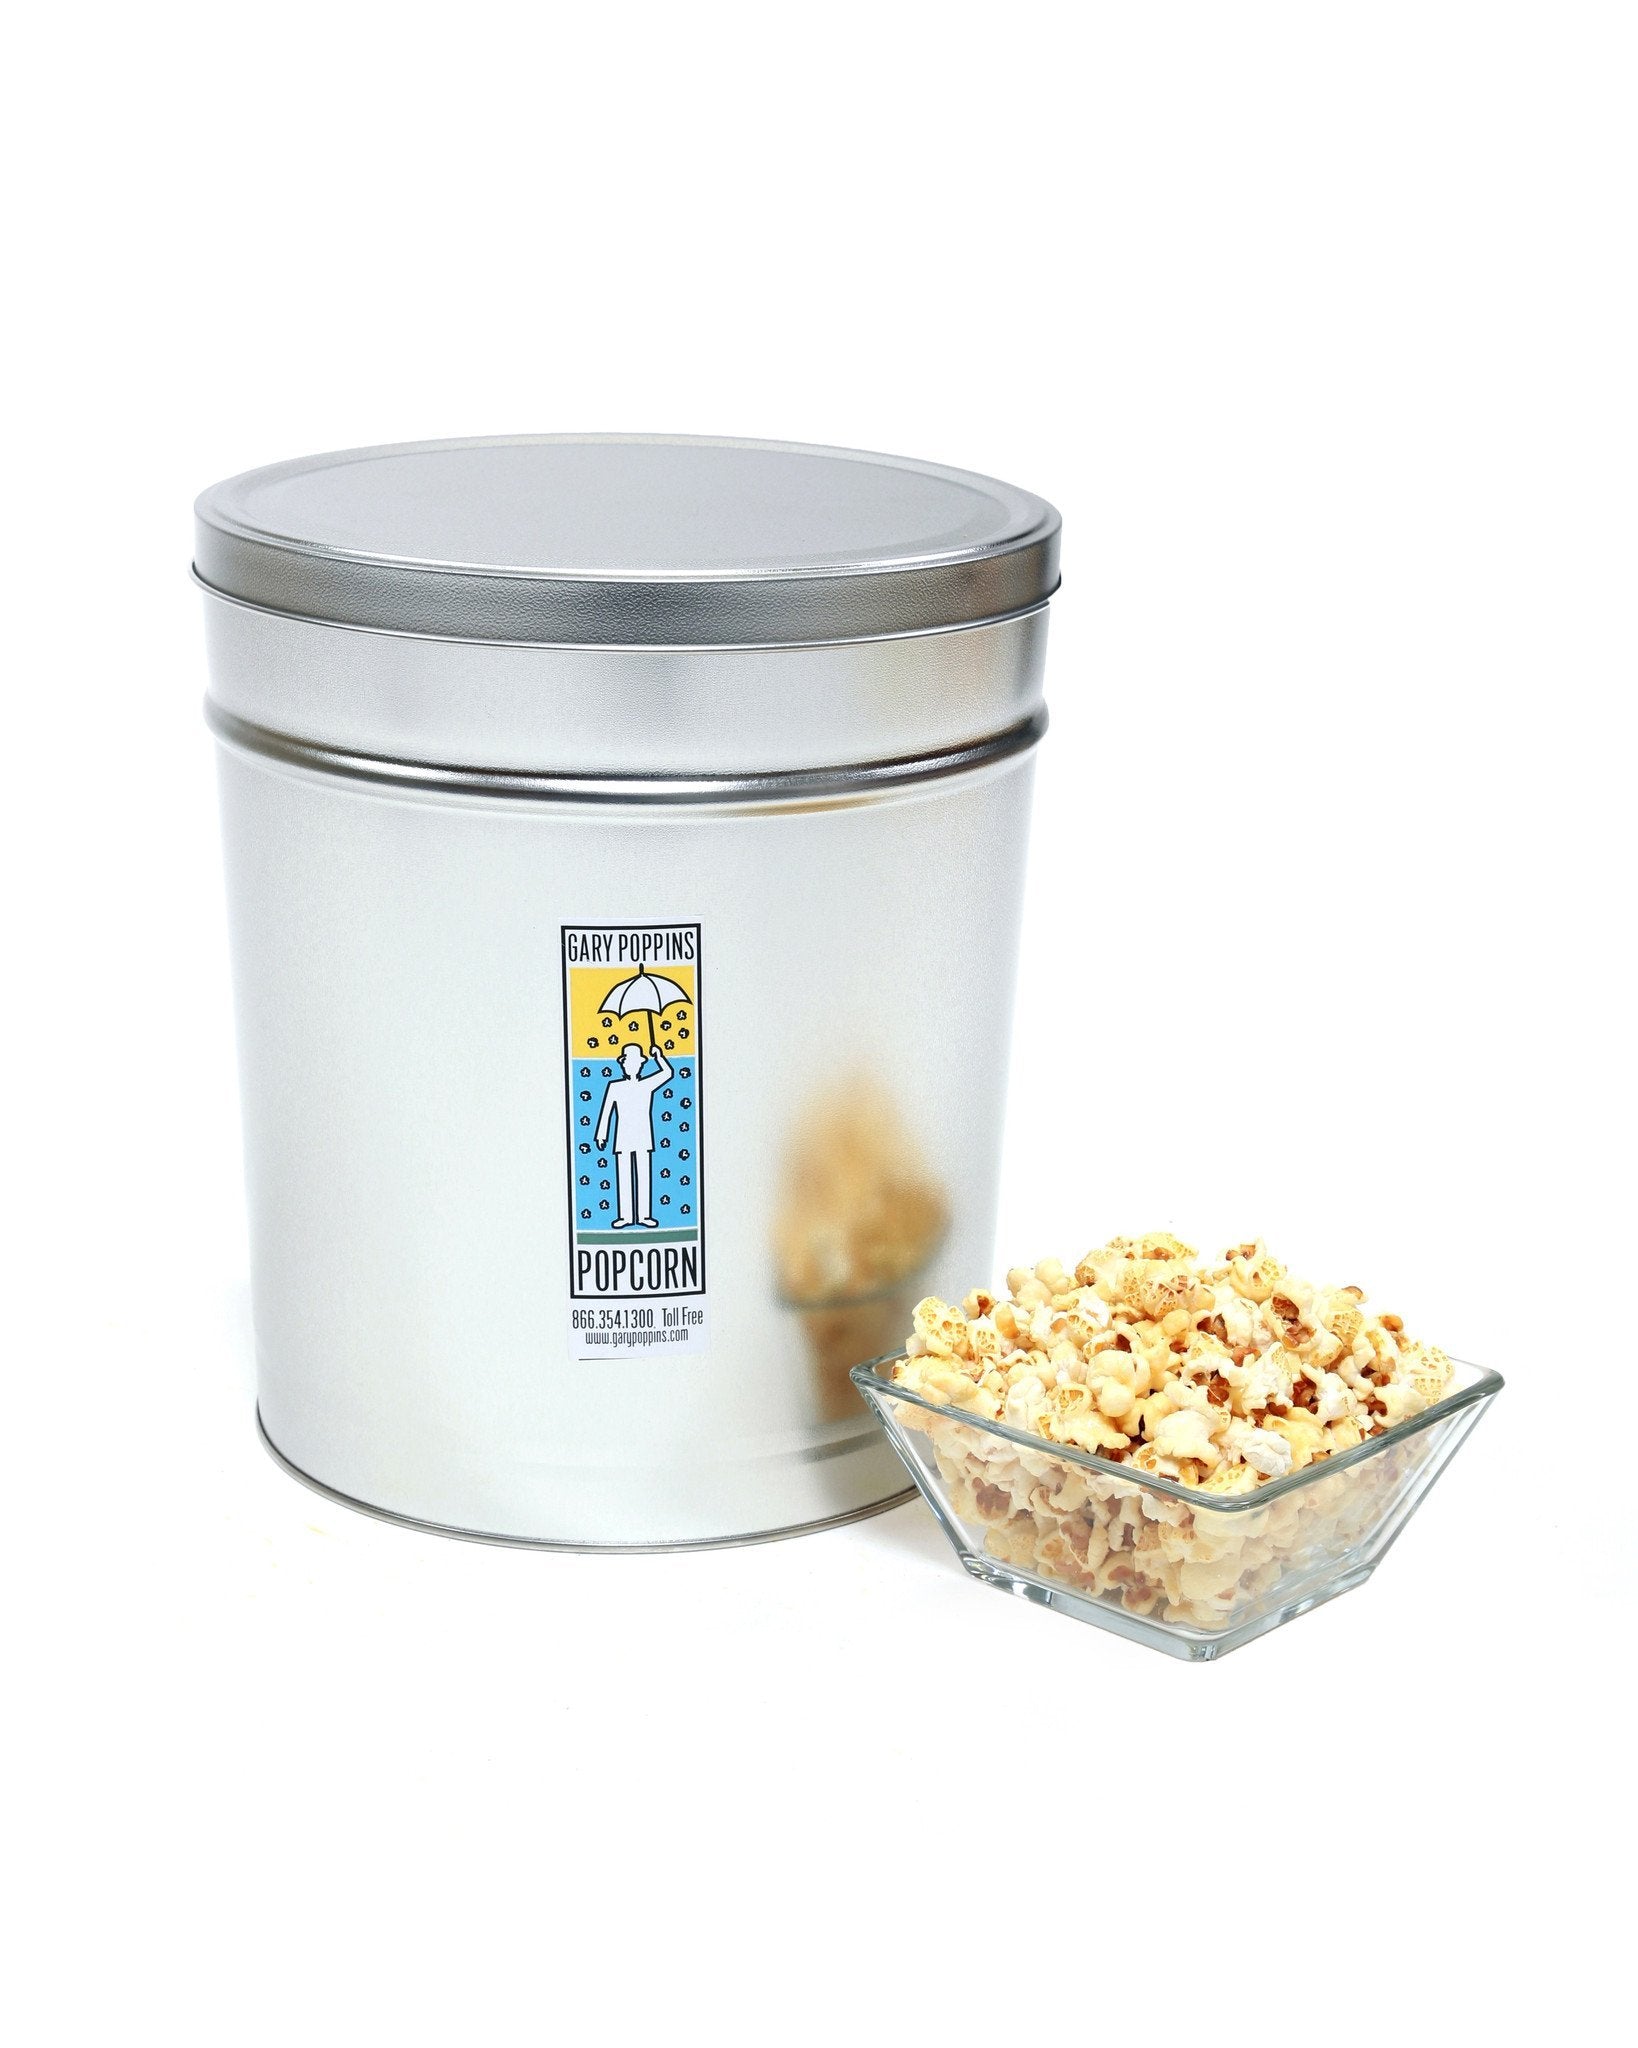 Popcorn refill bags 3 1/2 gallon